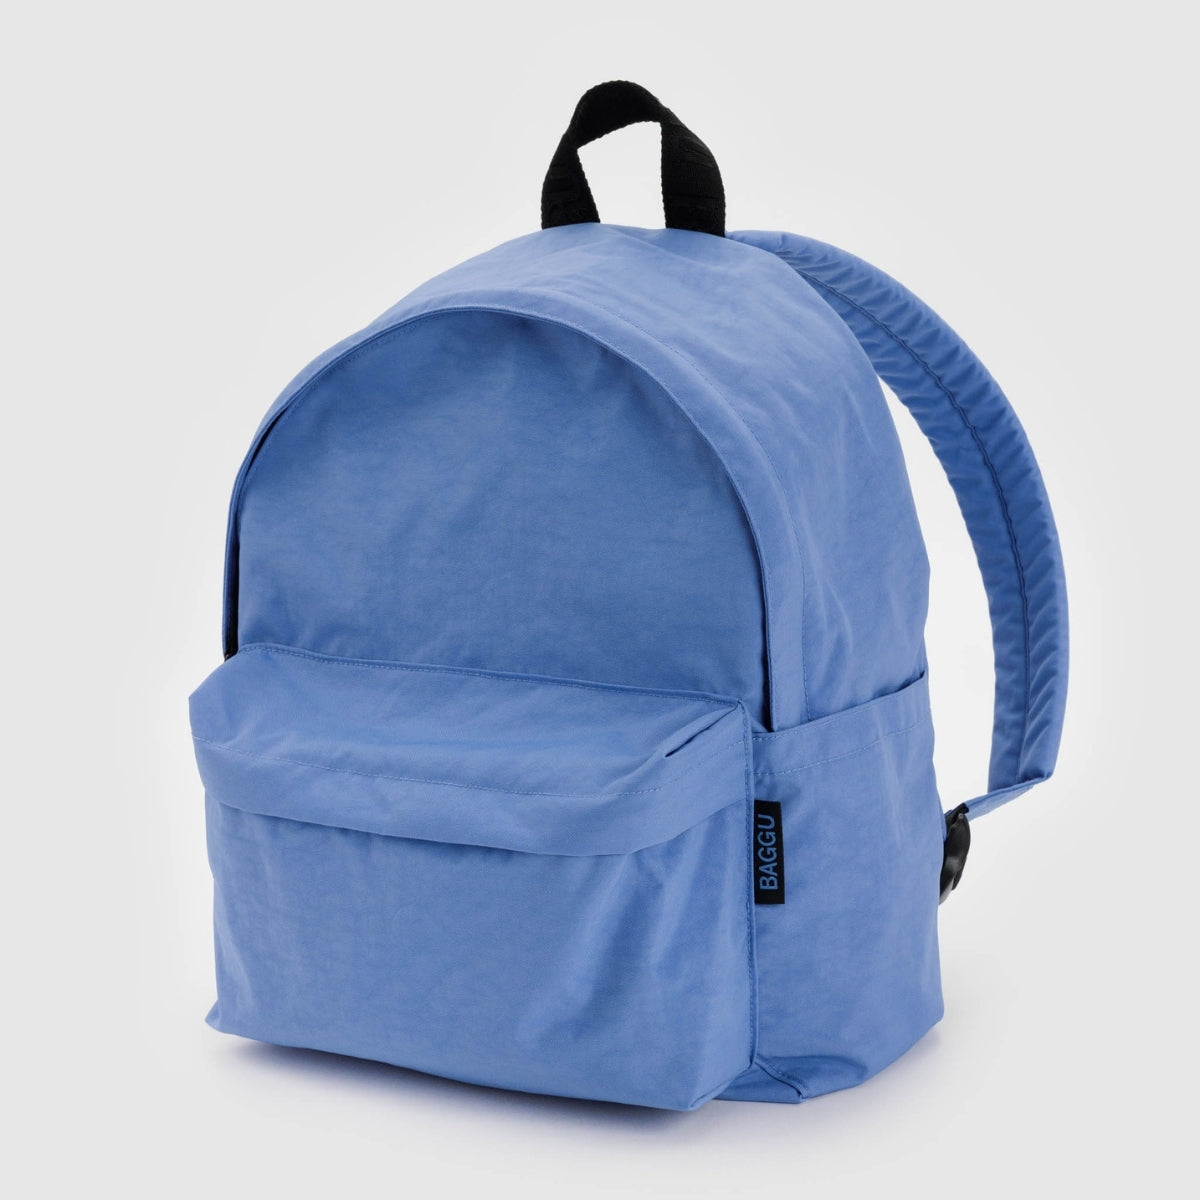 Baggu Medium Nylon Backpack in Pansy Blue